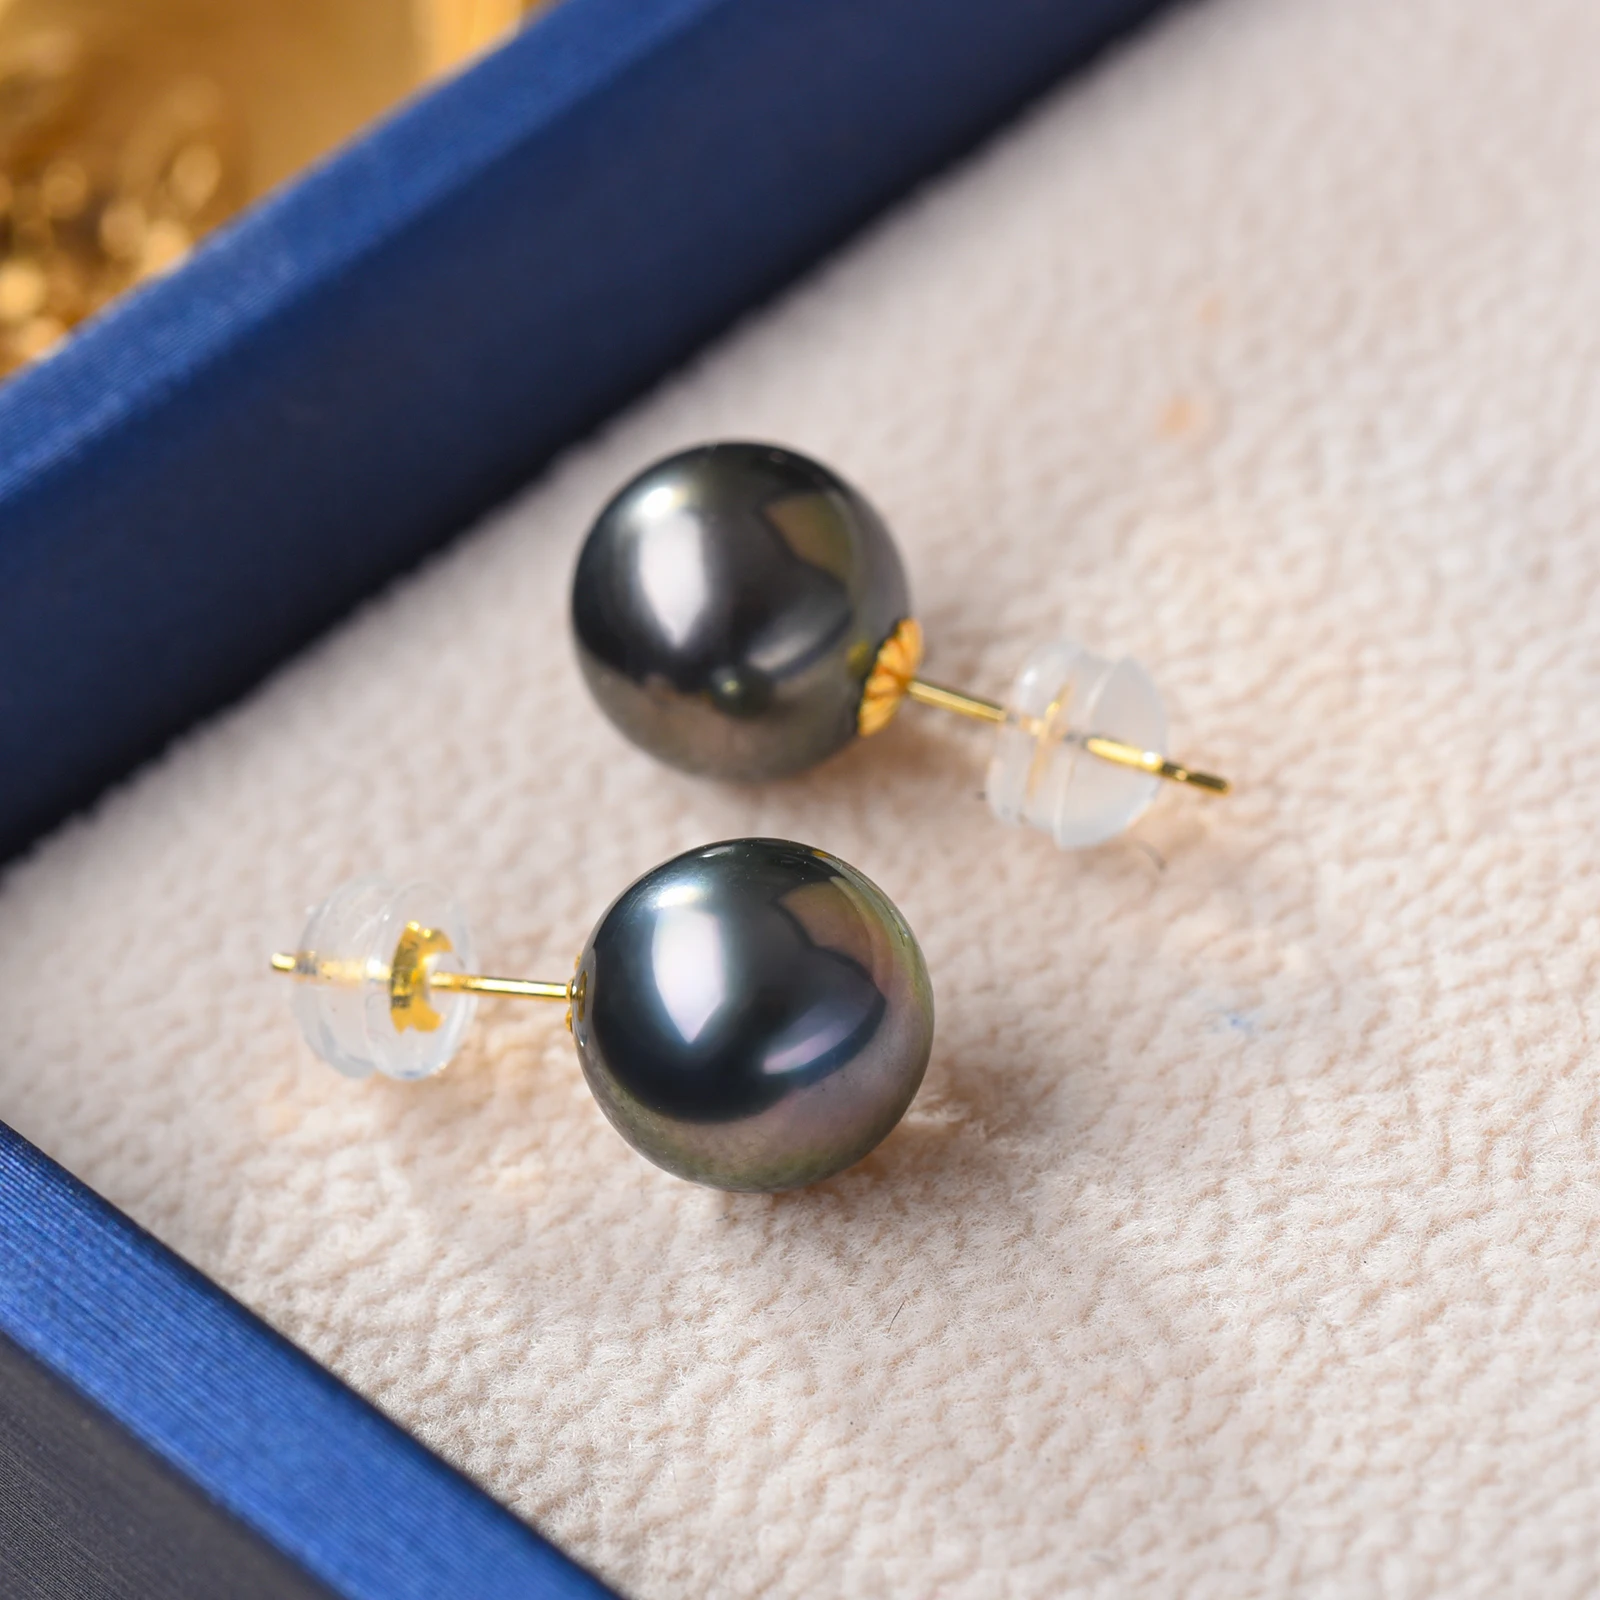 Tahitian Real Pearl Earrings for Women, Black 18k Gold Stud Earrings, Hypoallergenic Earrings with Genuine Cultured Pearls 8-9mm